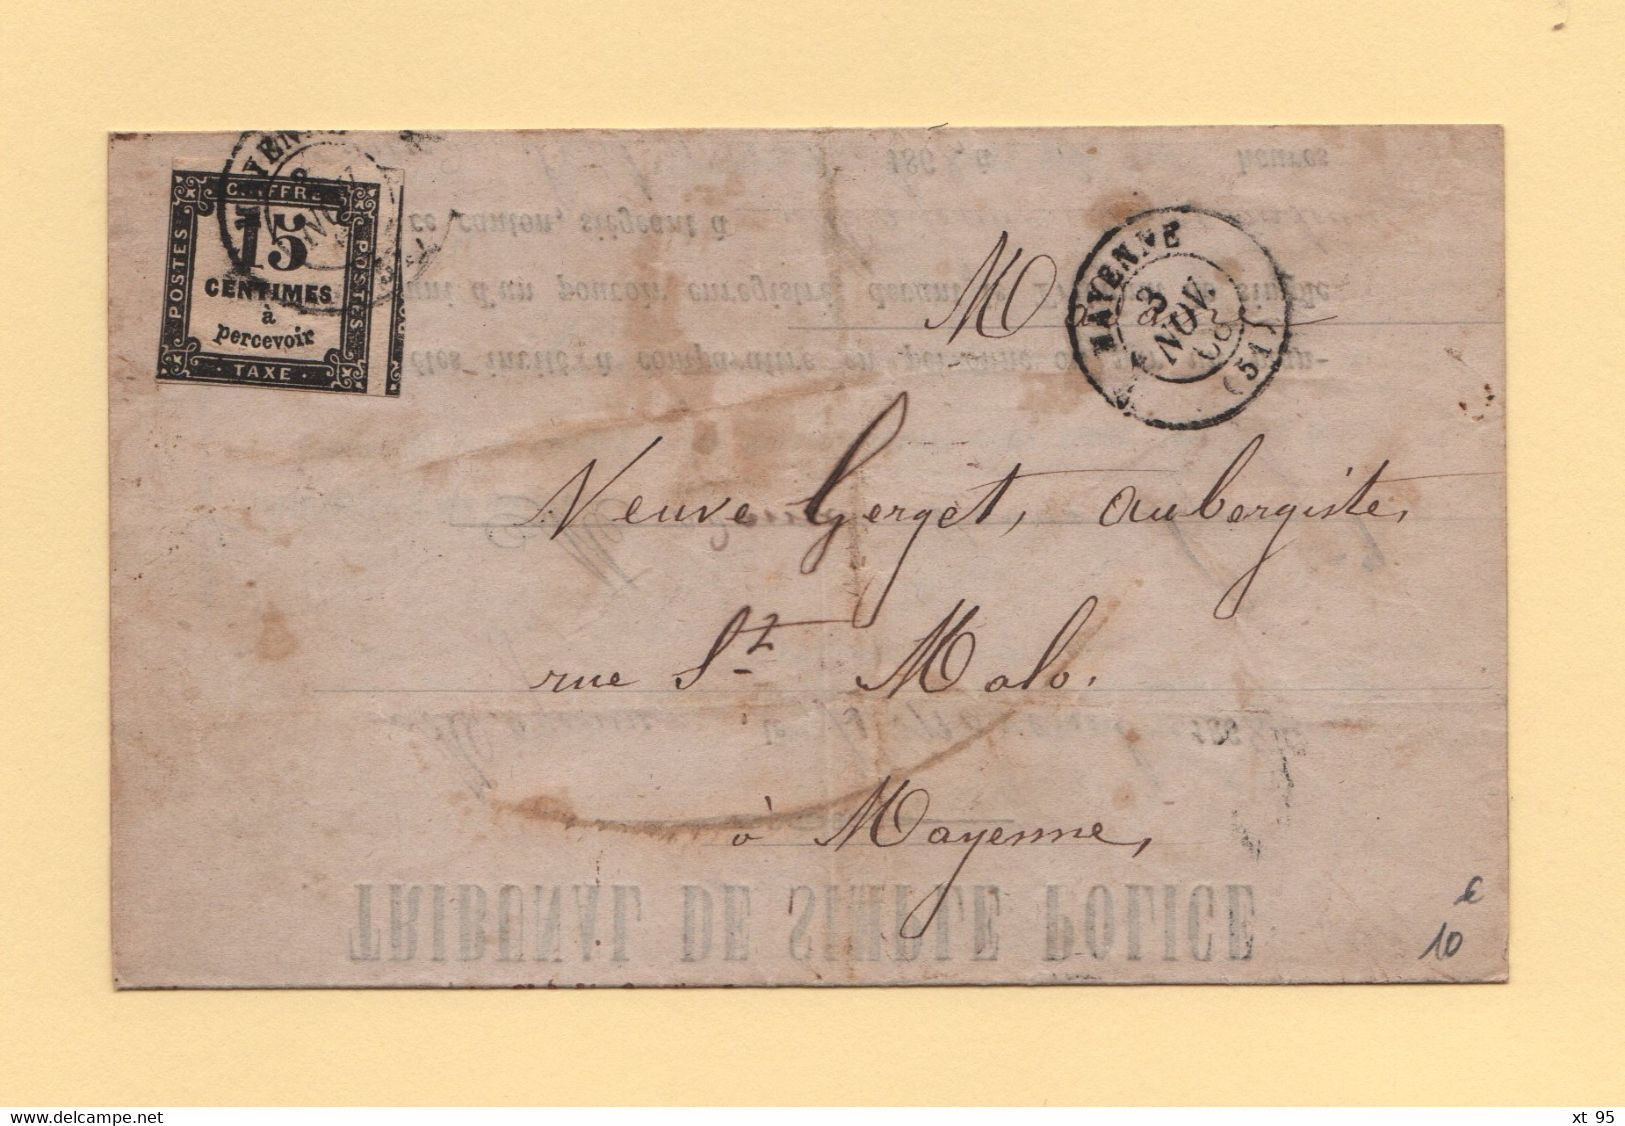 Mayenne - 51 - 3 Nov 1868 - Tribunal De Police - Defaut D Eclairage D Une Voiture - Timbre Taxe - 1859-1959 Cartas & Documentos